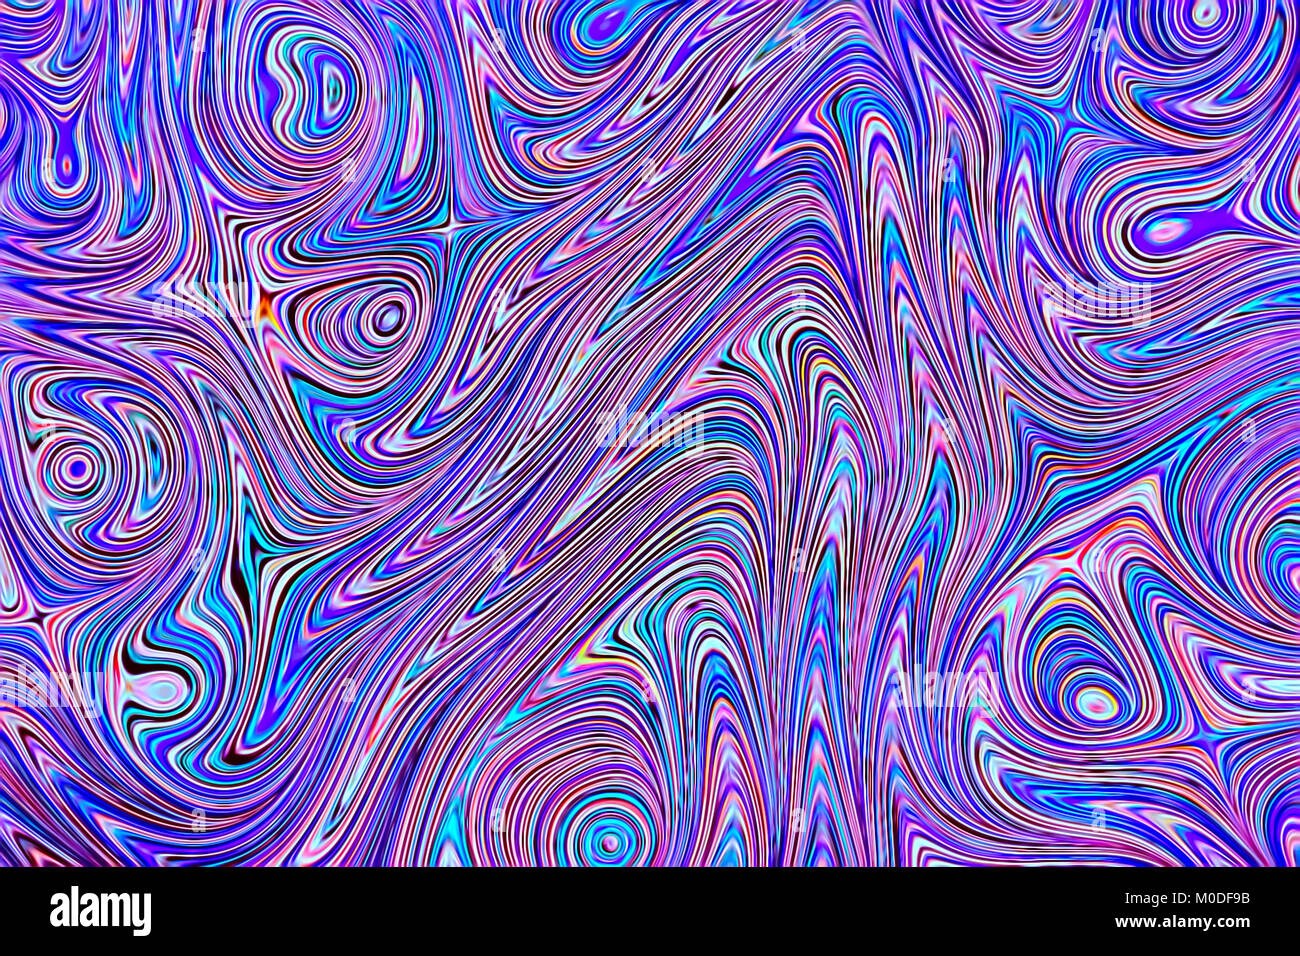 Marmorierten Hintergrund-abstrakten computer-Bild erzeugt. Die fraktale Geometrie: Chaos Blau und Lila geringelt Anschläge wie Venen. Trendige Kulisse für Abdeckungen, Stockfoto